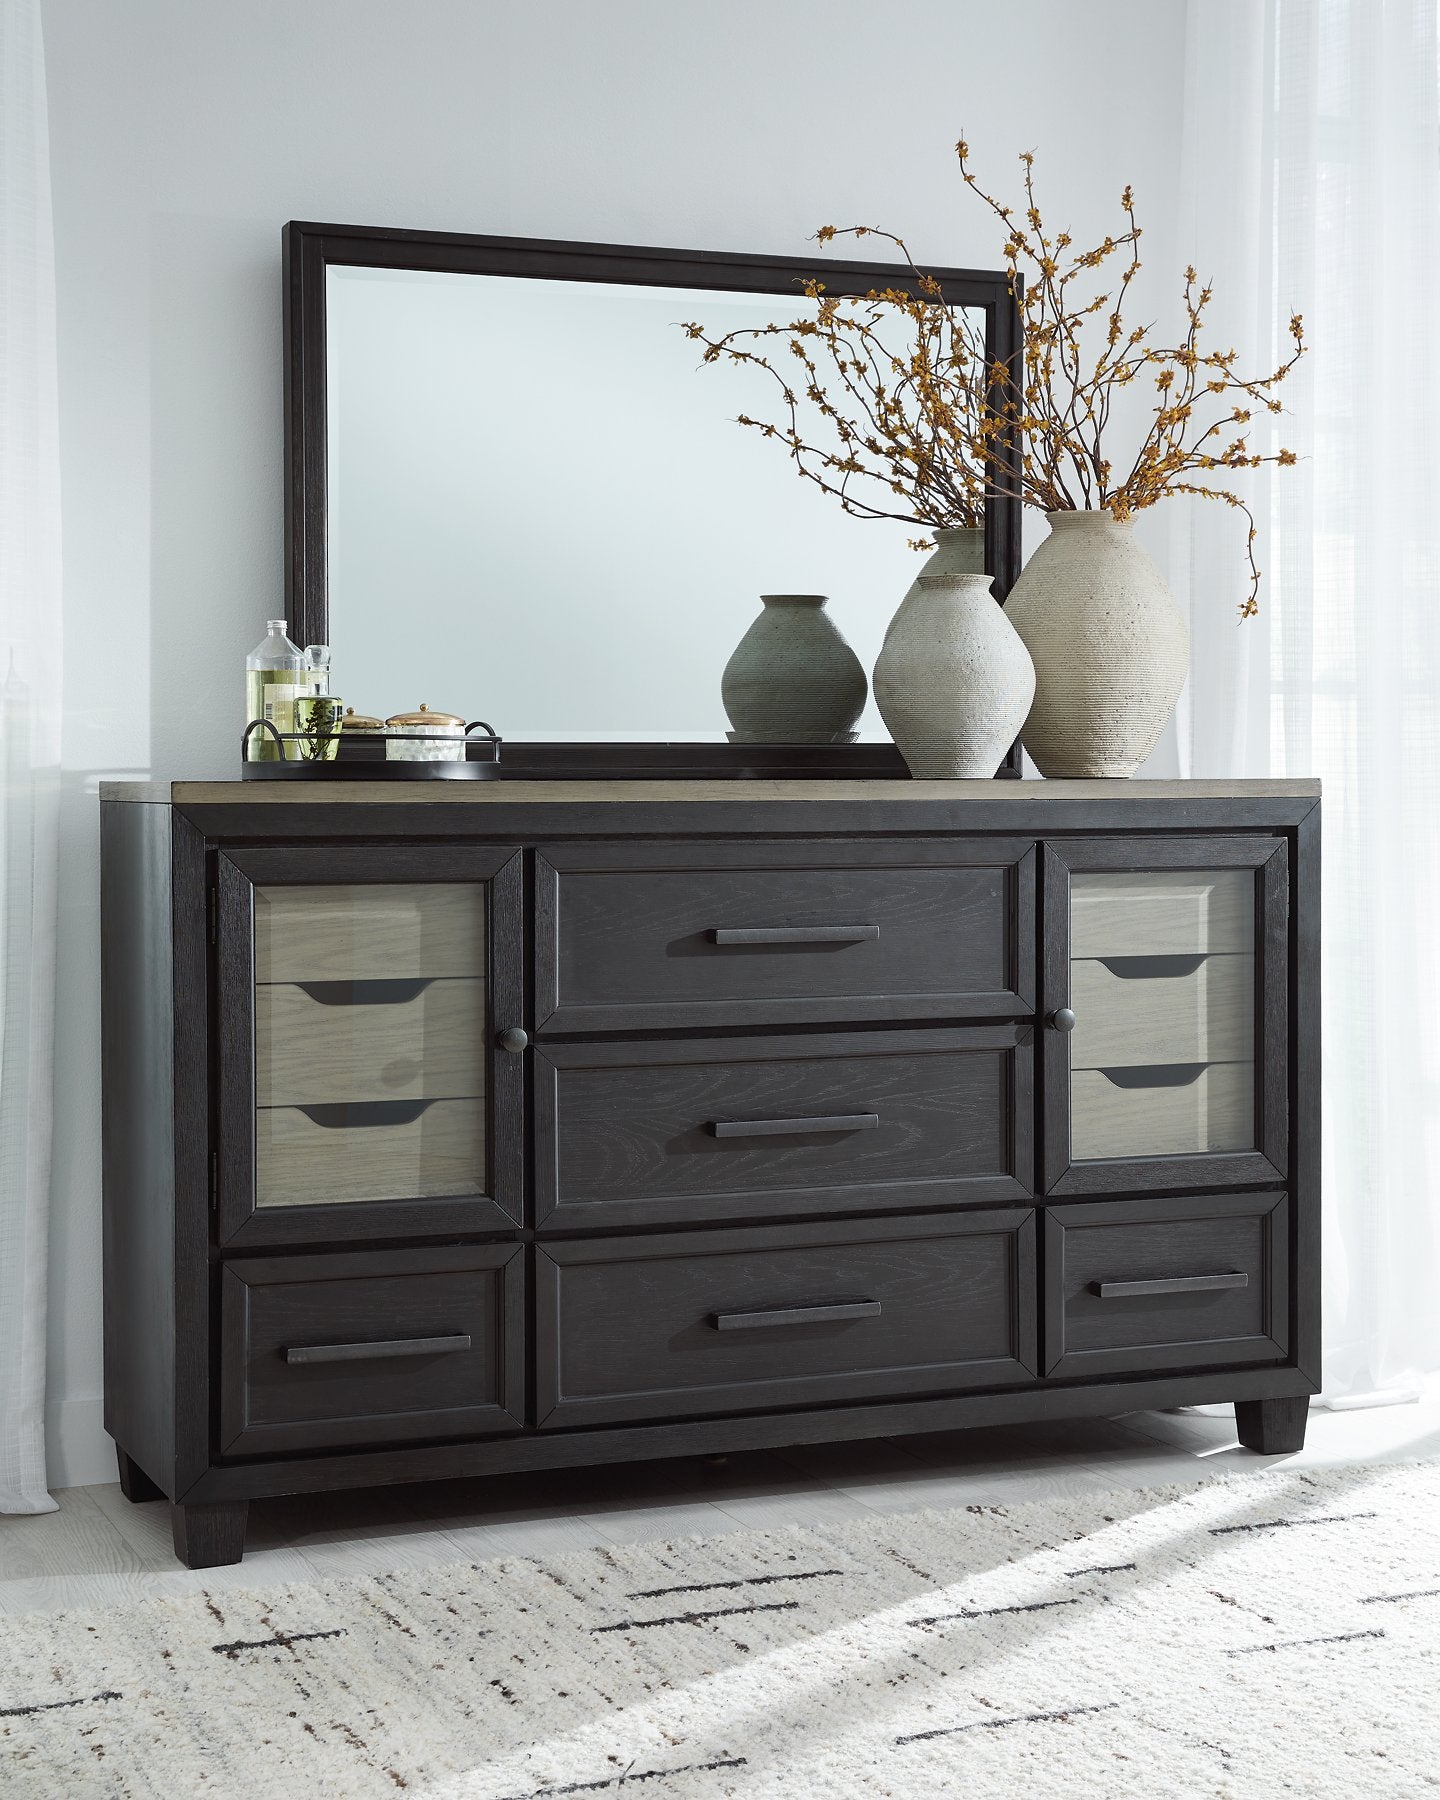 Foyland Dresser and Mirror - Romeo & Juliet Furniture (Warren,MI)